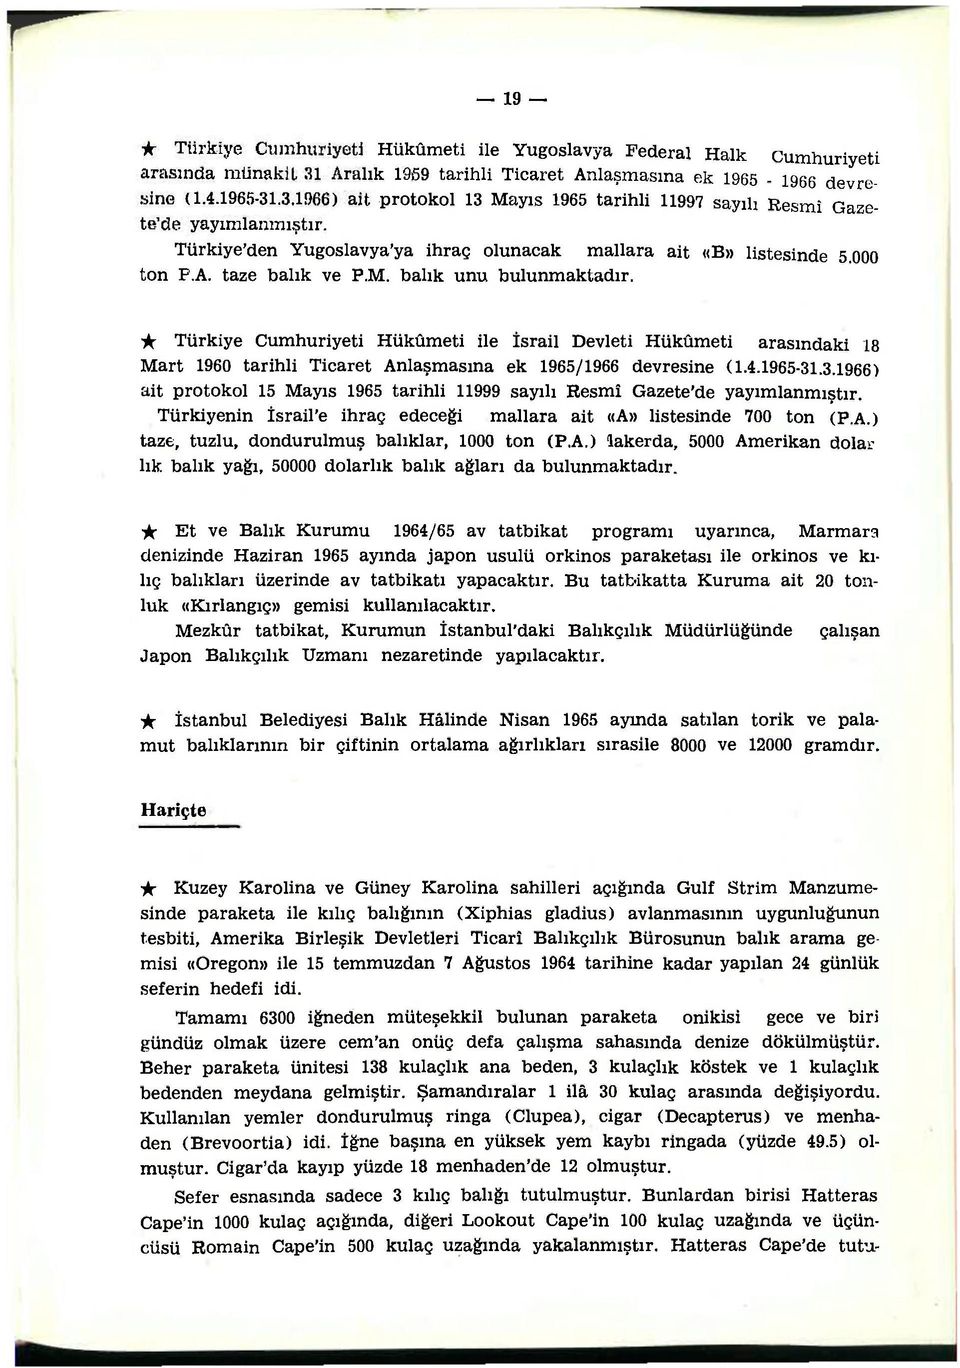 ic Türkiye Cumhuriyeti Hükümeti ile İsrail Devleti Hükümeti arasındaki 18 Mart 1960 tarihli Ticaret Anlaşmasına ek 1965/1966 devresine (1.4.1965-31